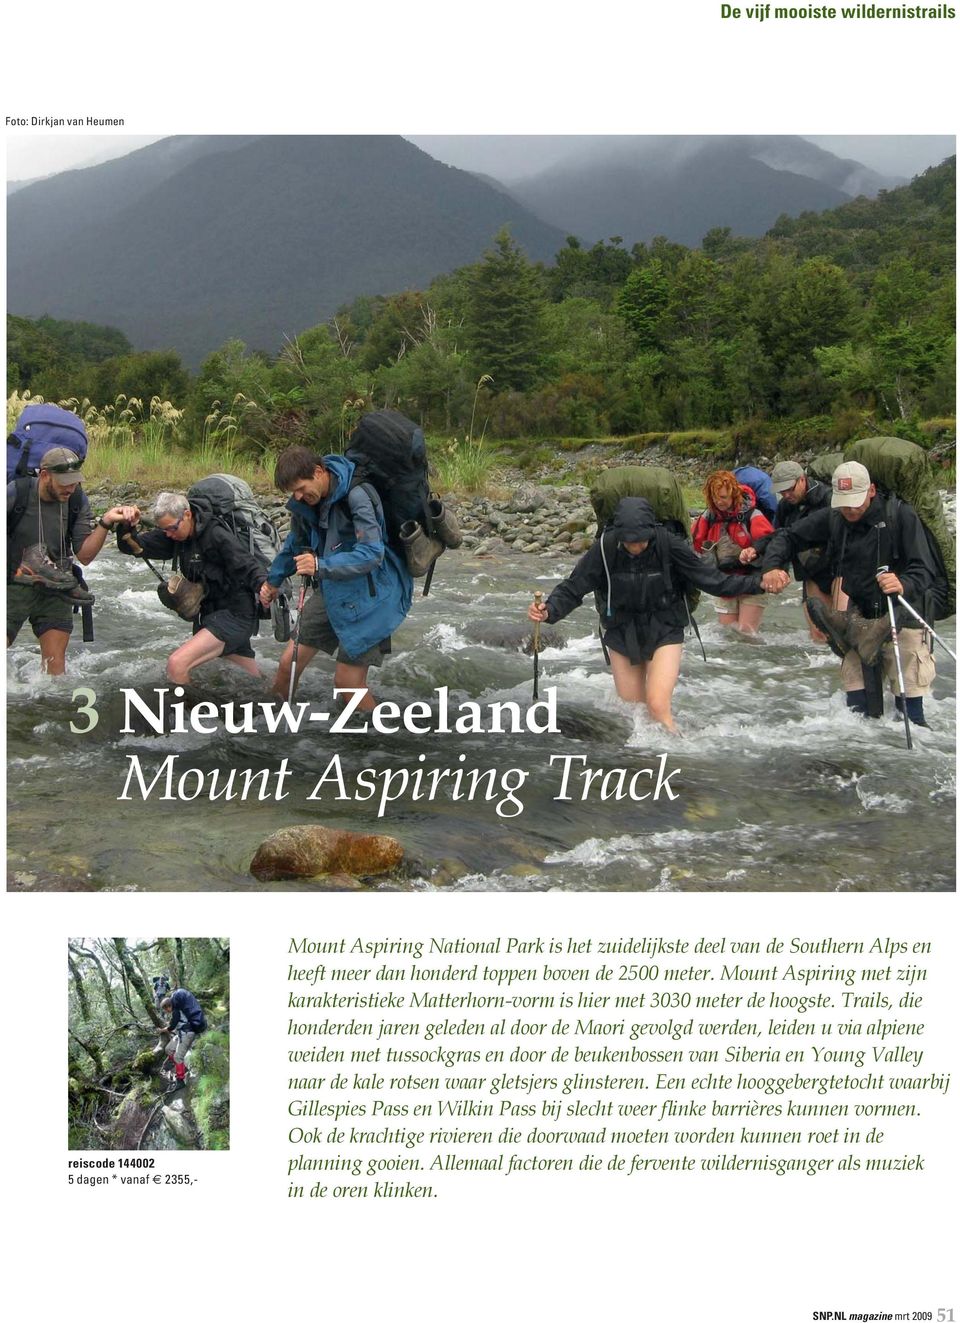 Trails, die honderden jaren geleden al door de Maori gevolgd werden, leiden u via alpiene weiden met tussockgras en door de beukenbossen van Siberia en Young Valley naar de kale rotsen waar gletsjers